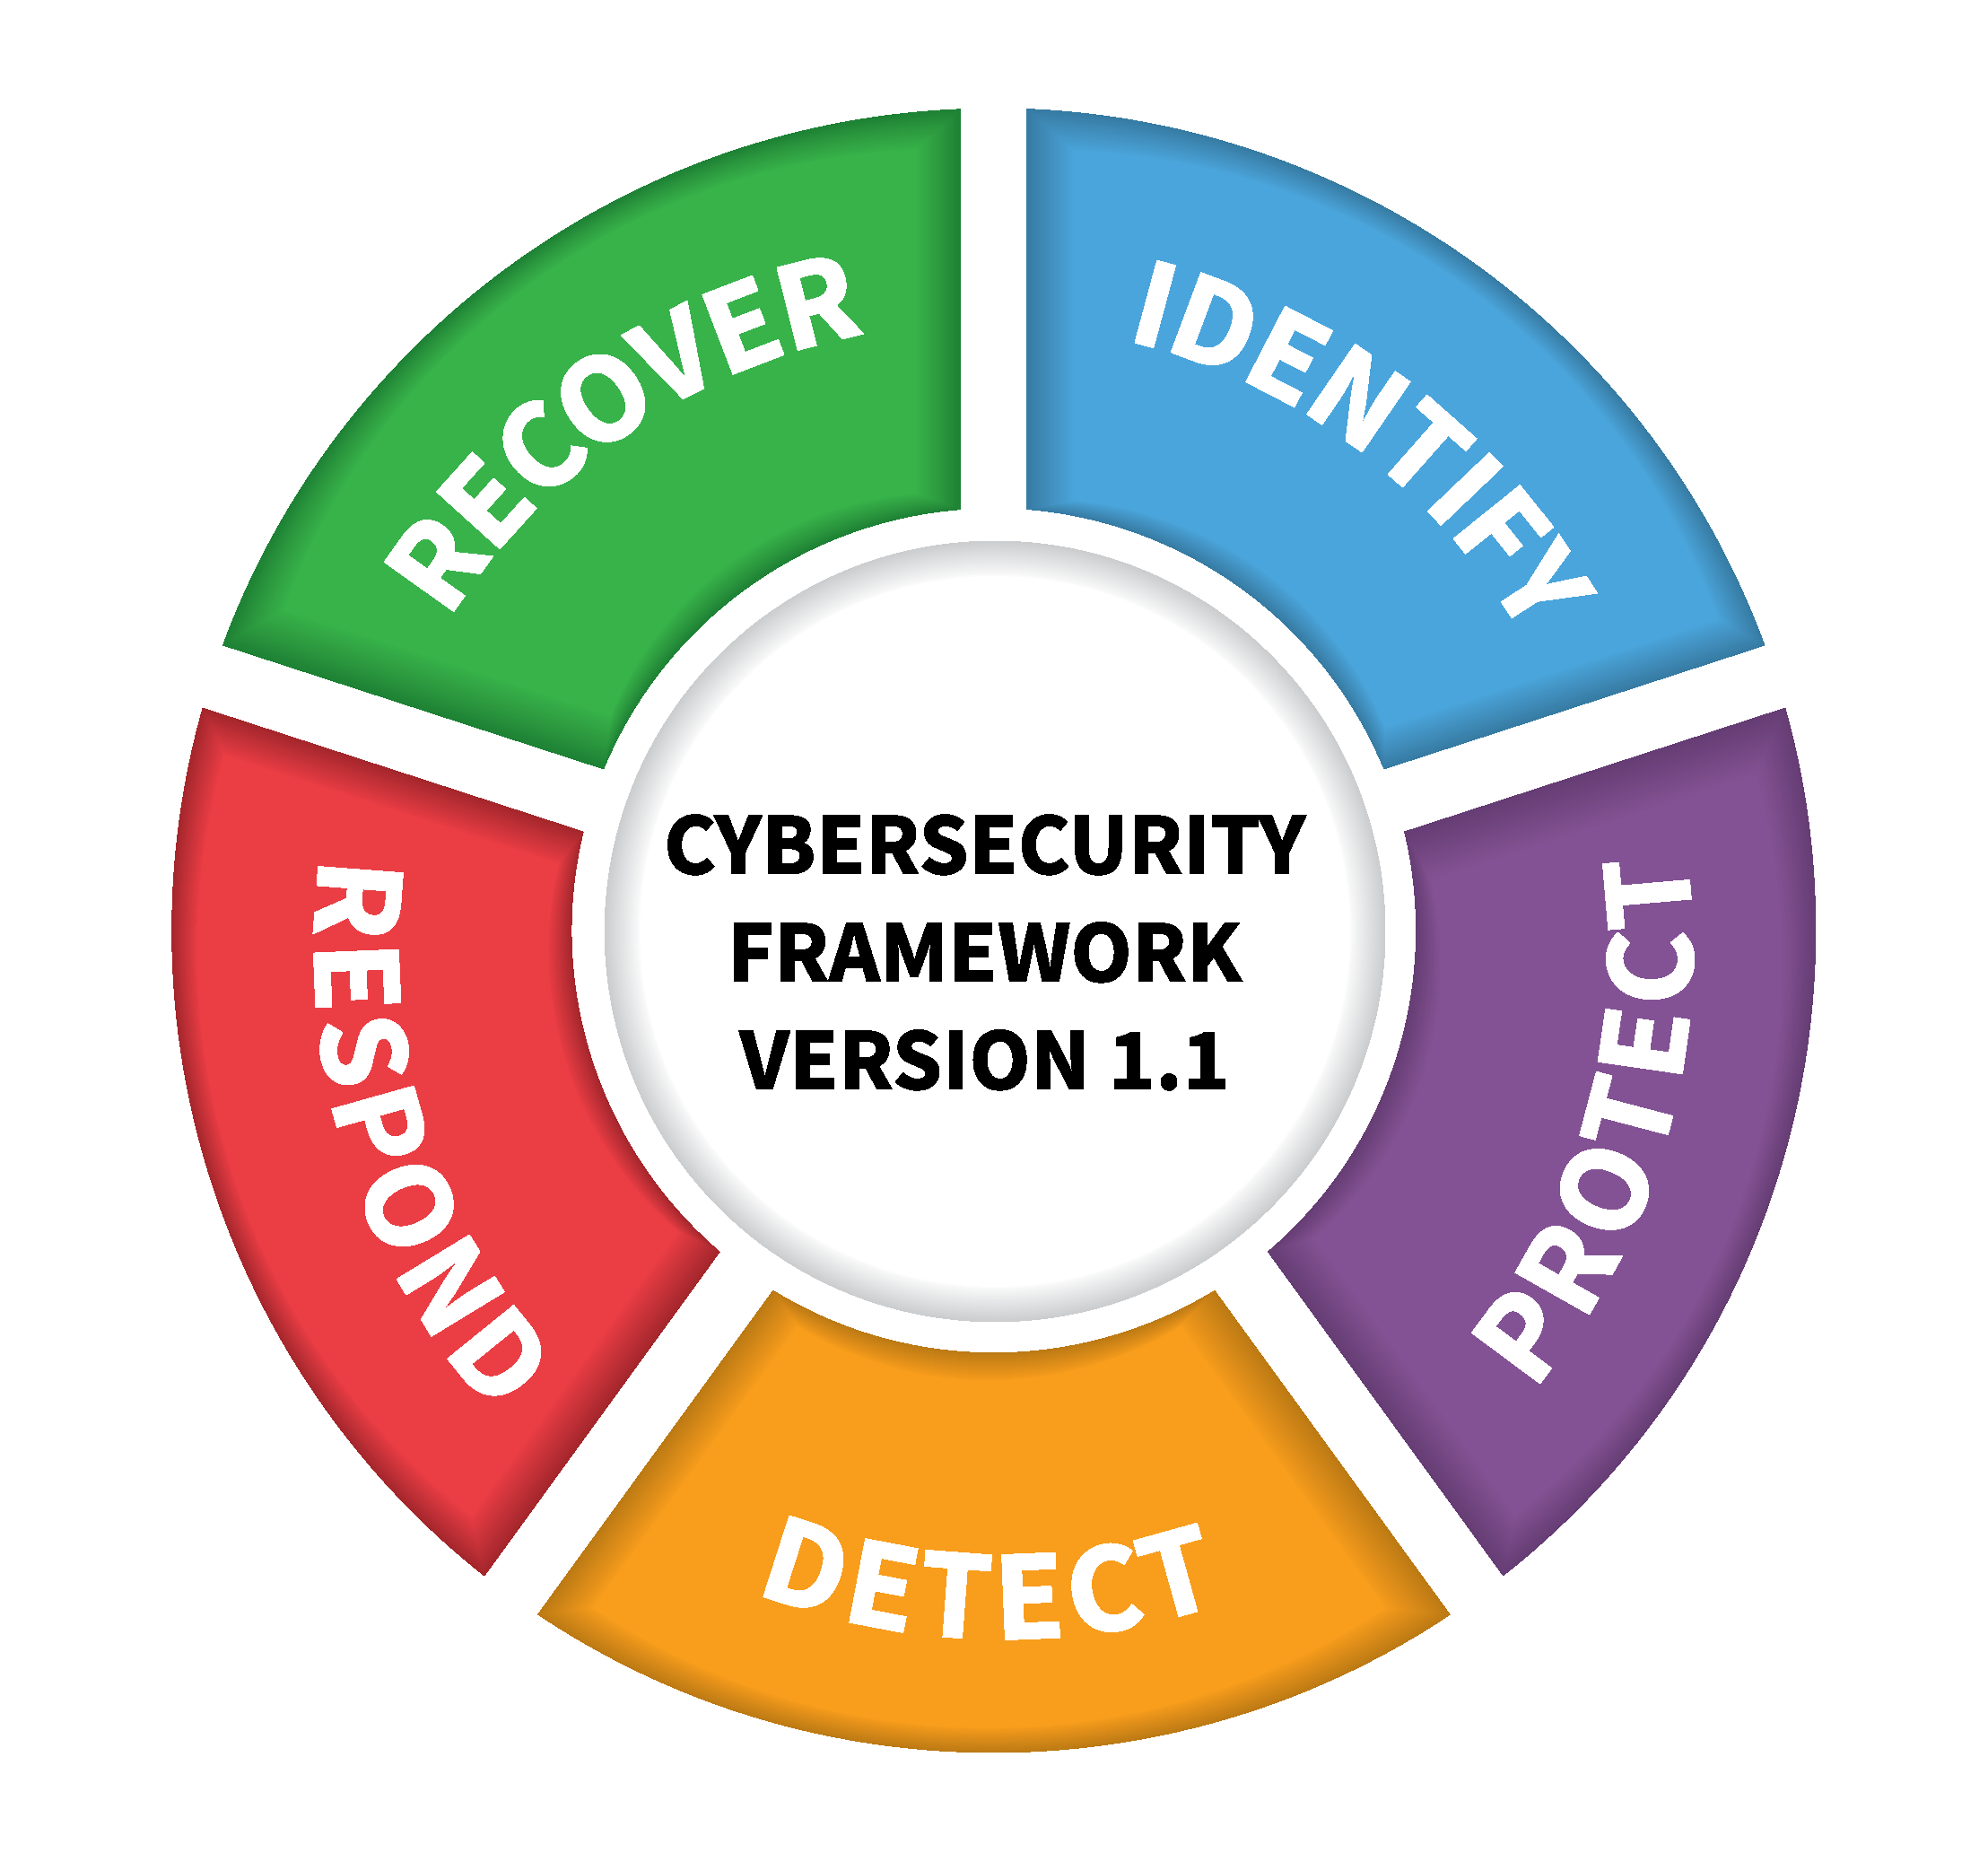 Das Nist Framework Für Cybersicherheit